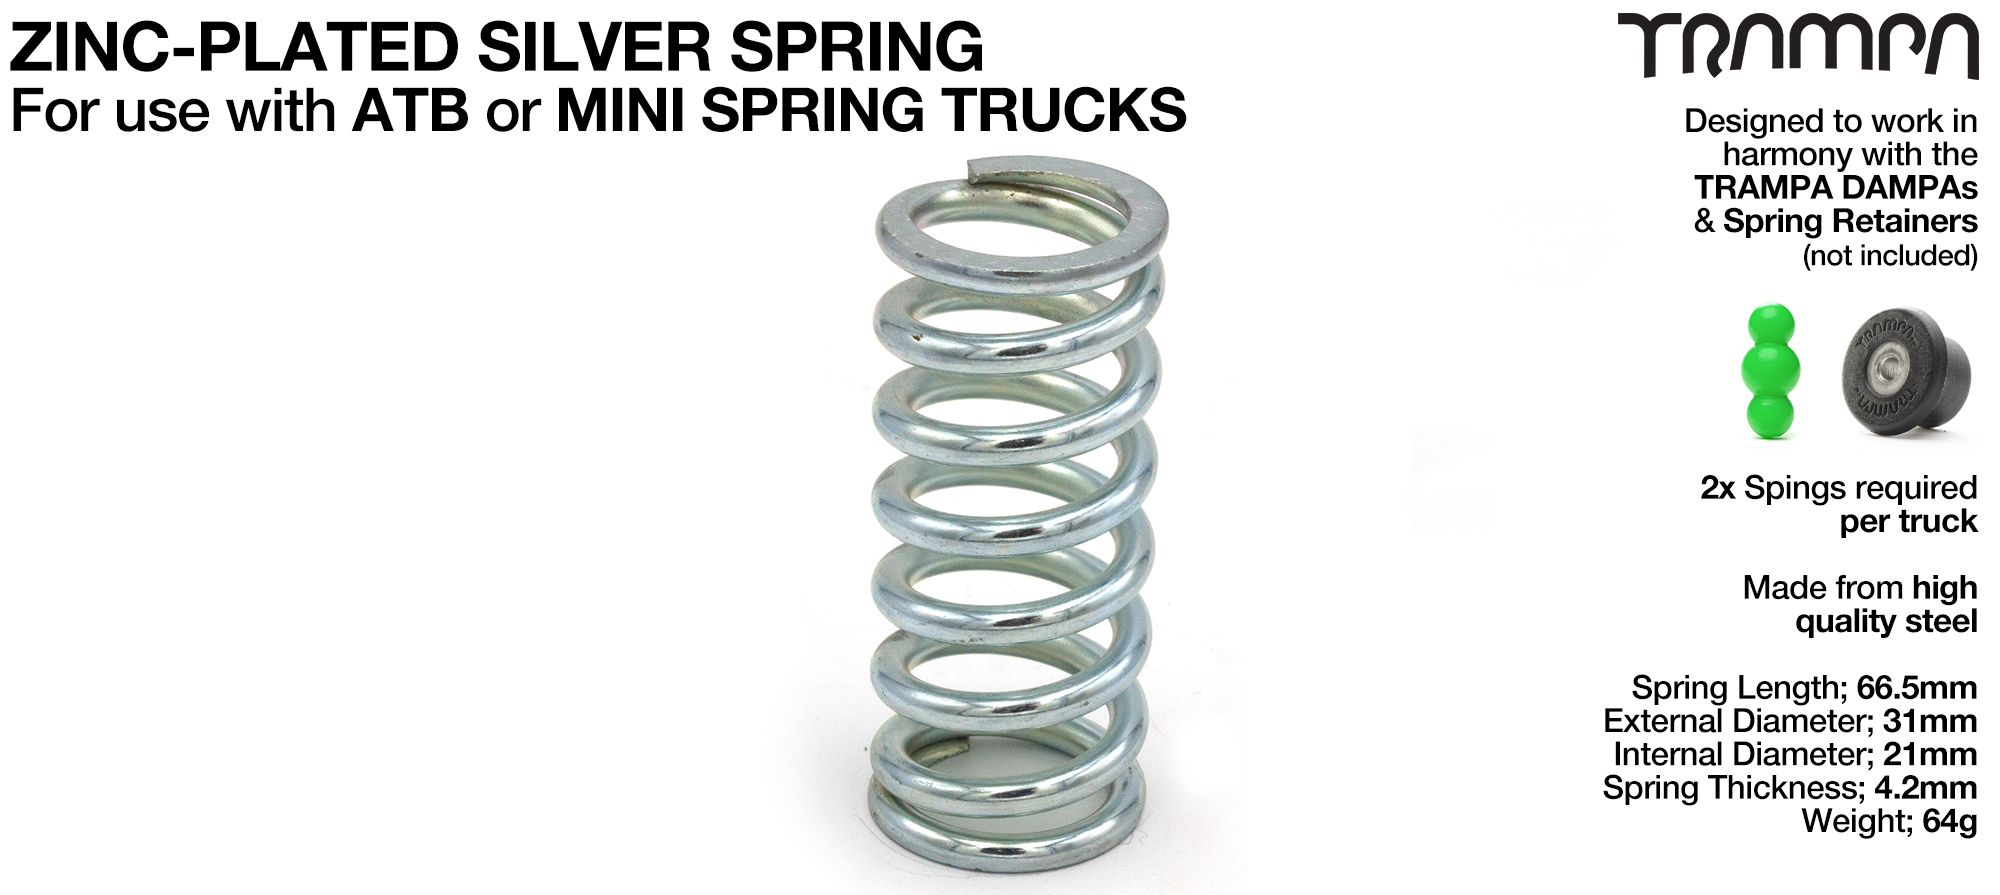 Steel Spring Nickel Plated - SILVER